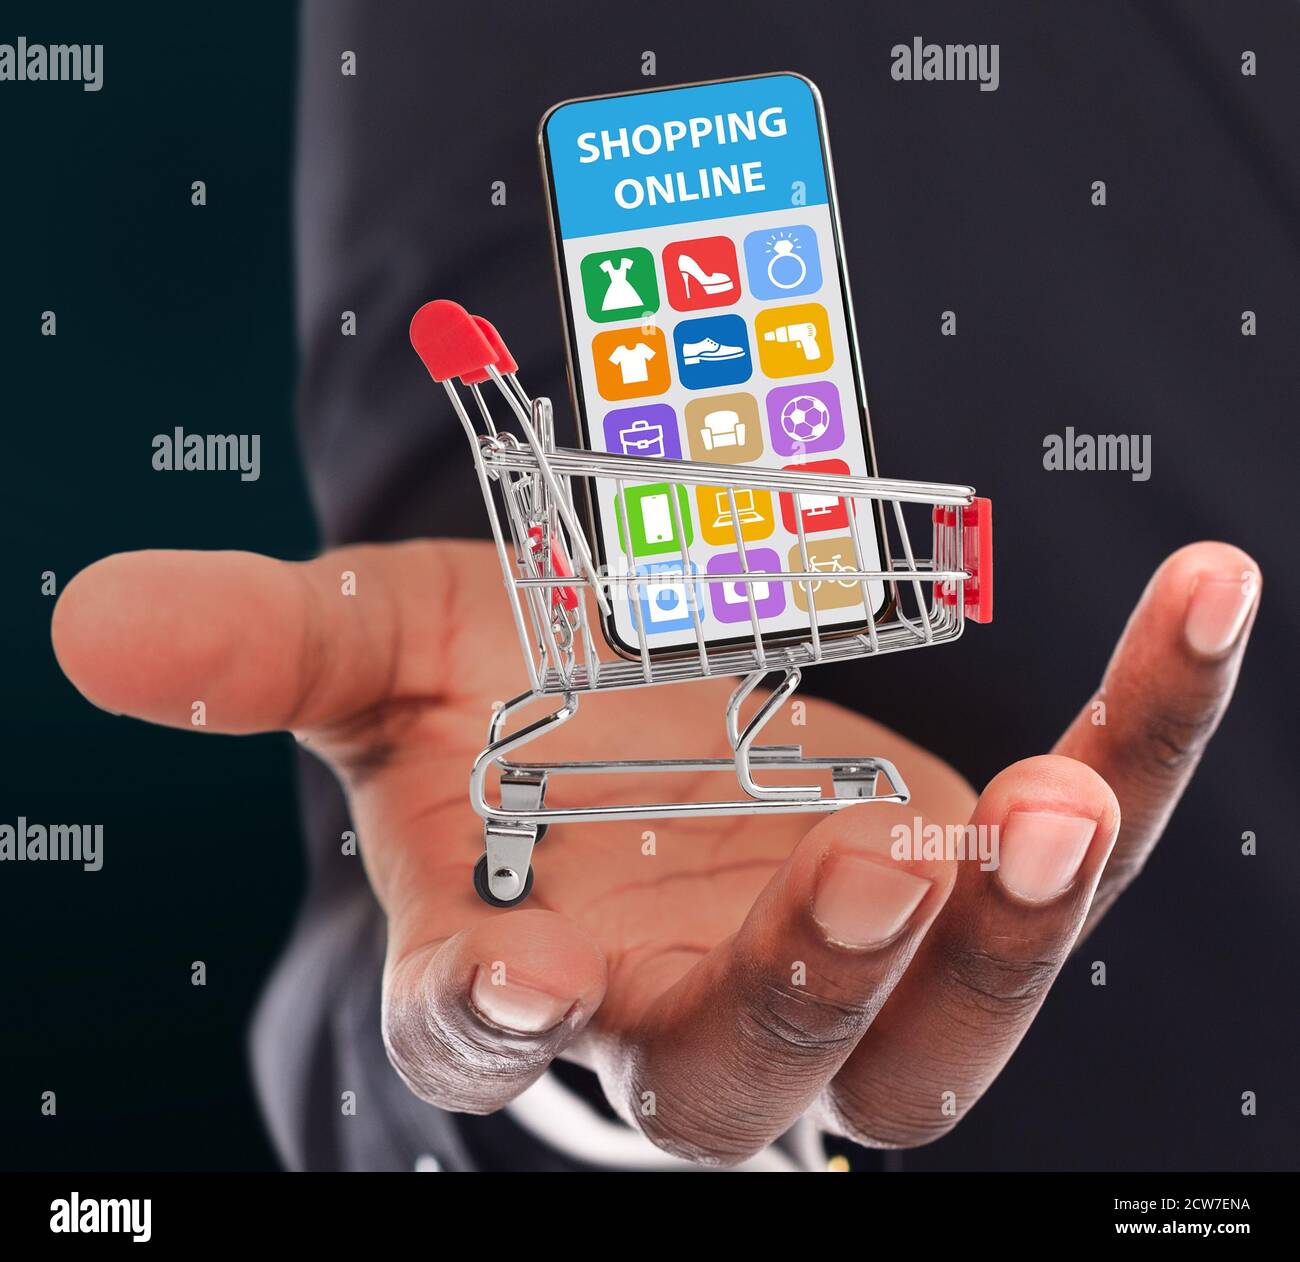 Un gars noir tenant un panier avec un téléphone mobile, collage avec un magasin onilne vendant différents articles ménagers à l'écran Banque D'Images